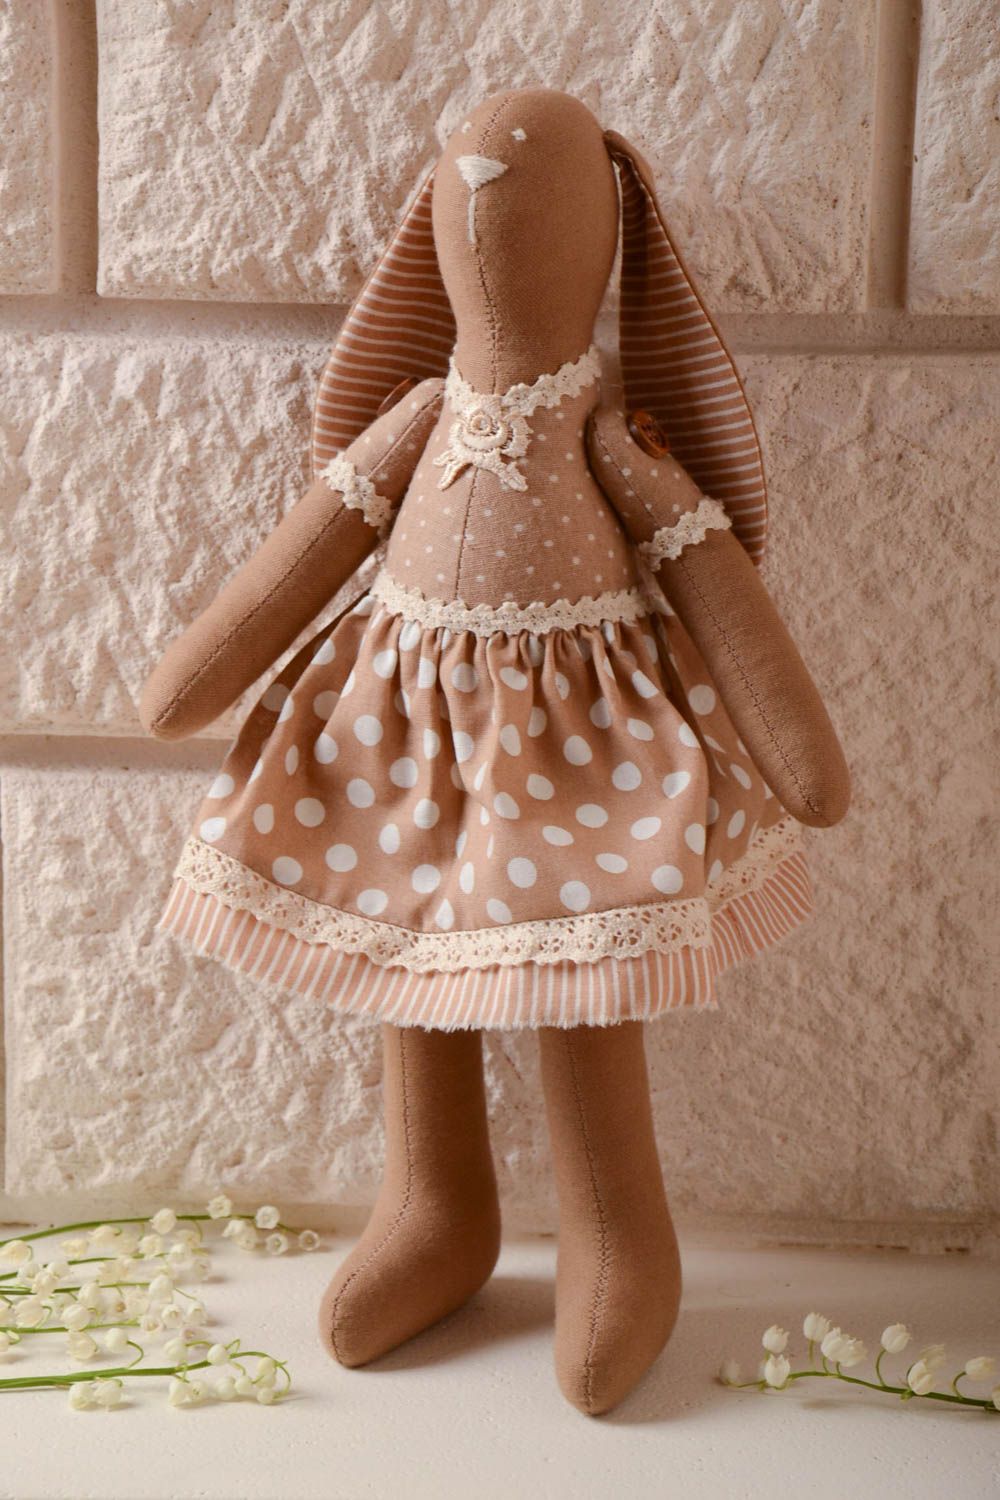 Мягкая кукла ручной работы из хлопка для декора дома или в подарок ребенку Зайка фото 1